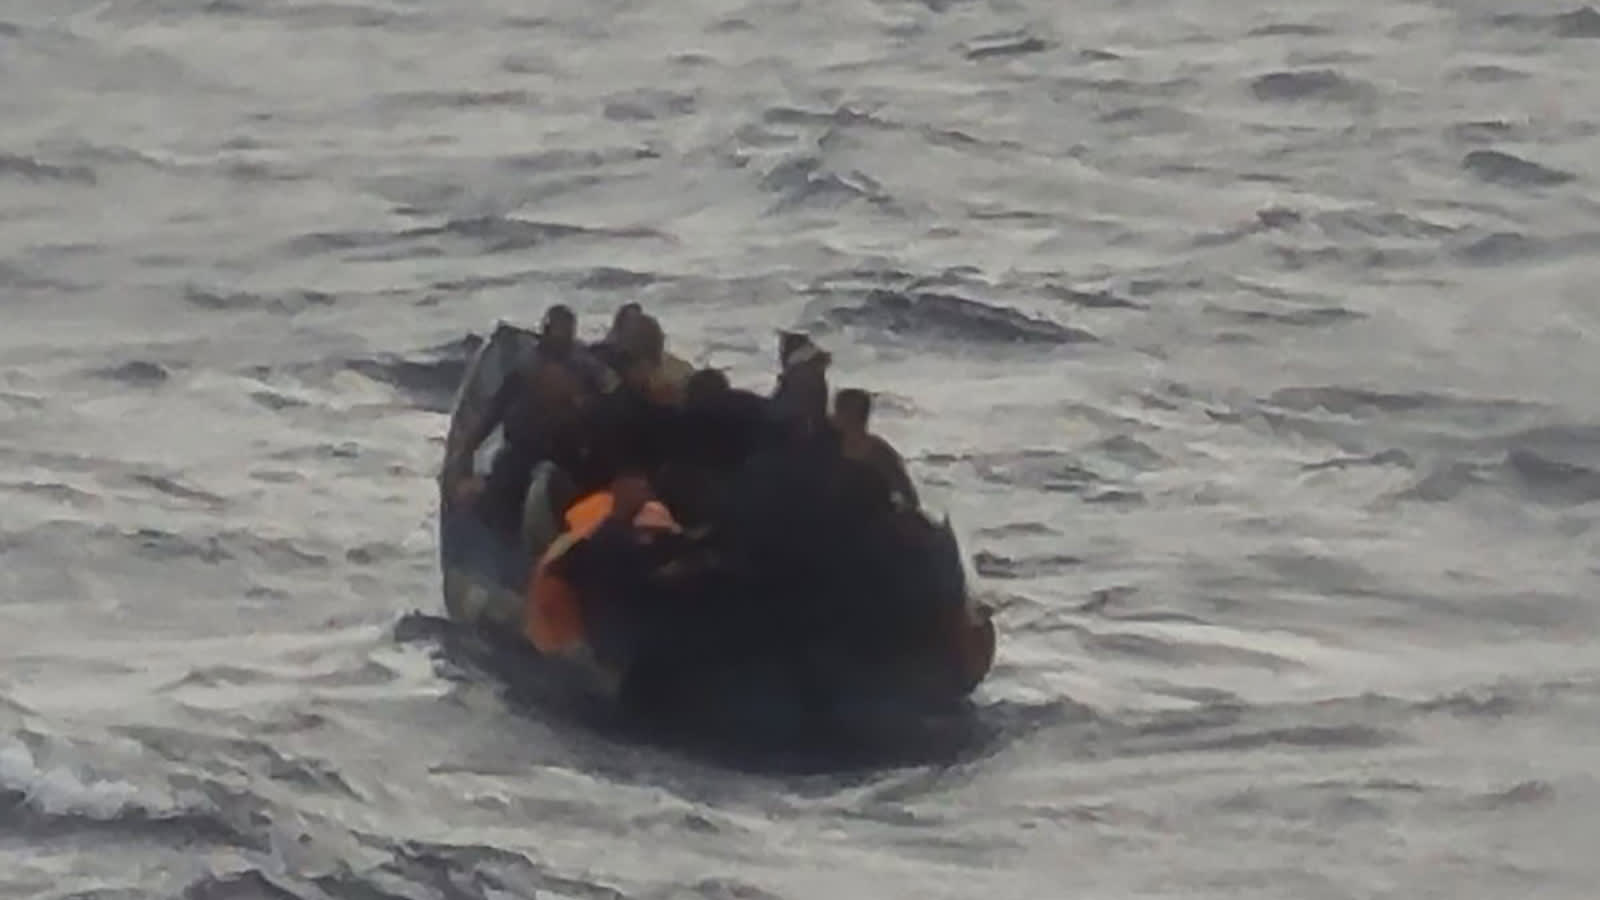 سفينة سياحية تنقذ 16 شخصًا من مركب تتقاذفه الأمواج قبالة سواحل كوبا